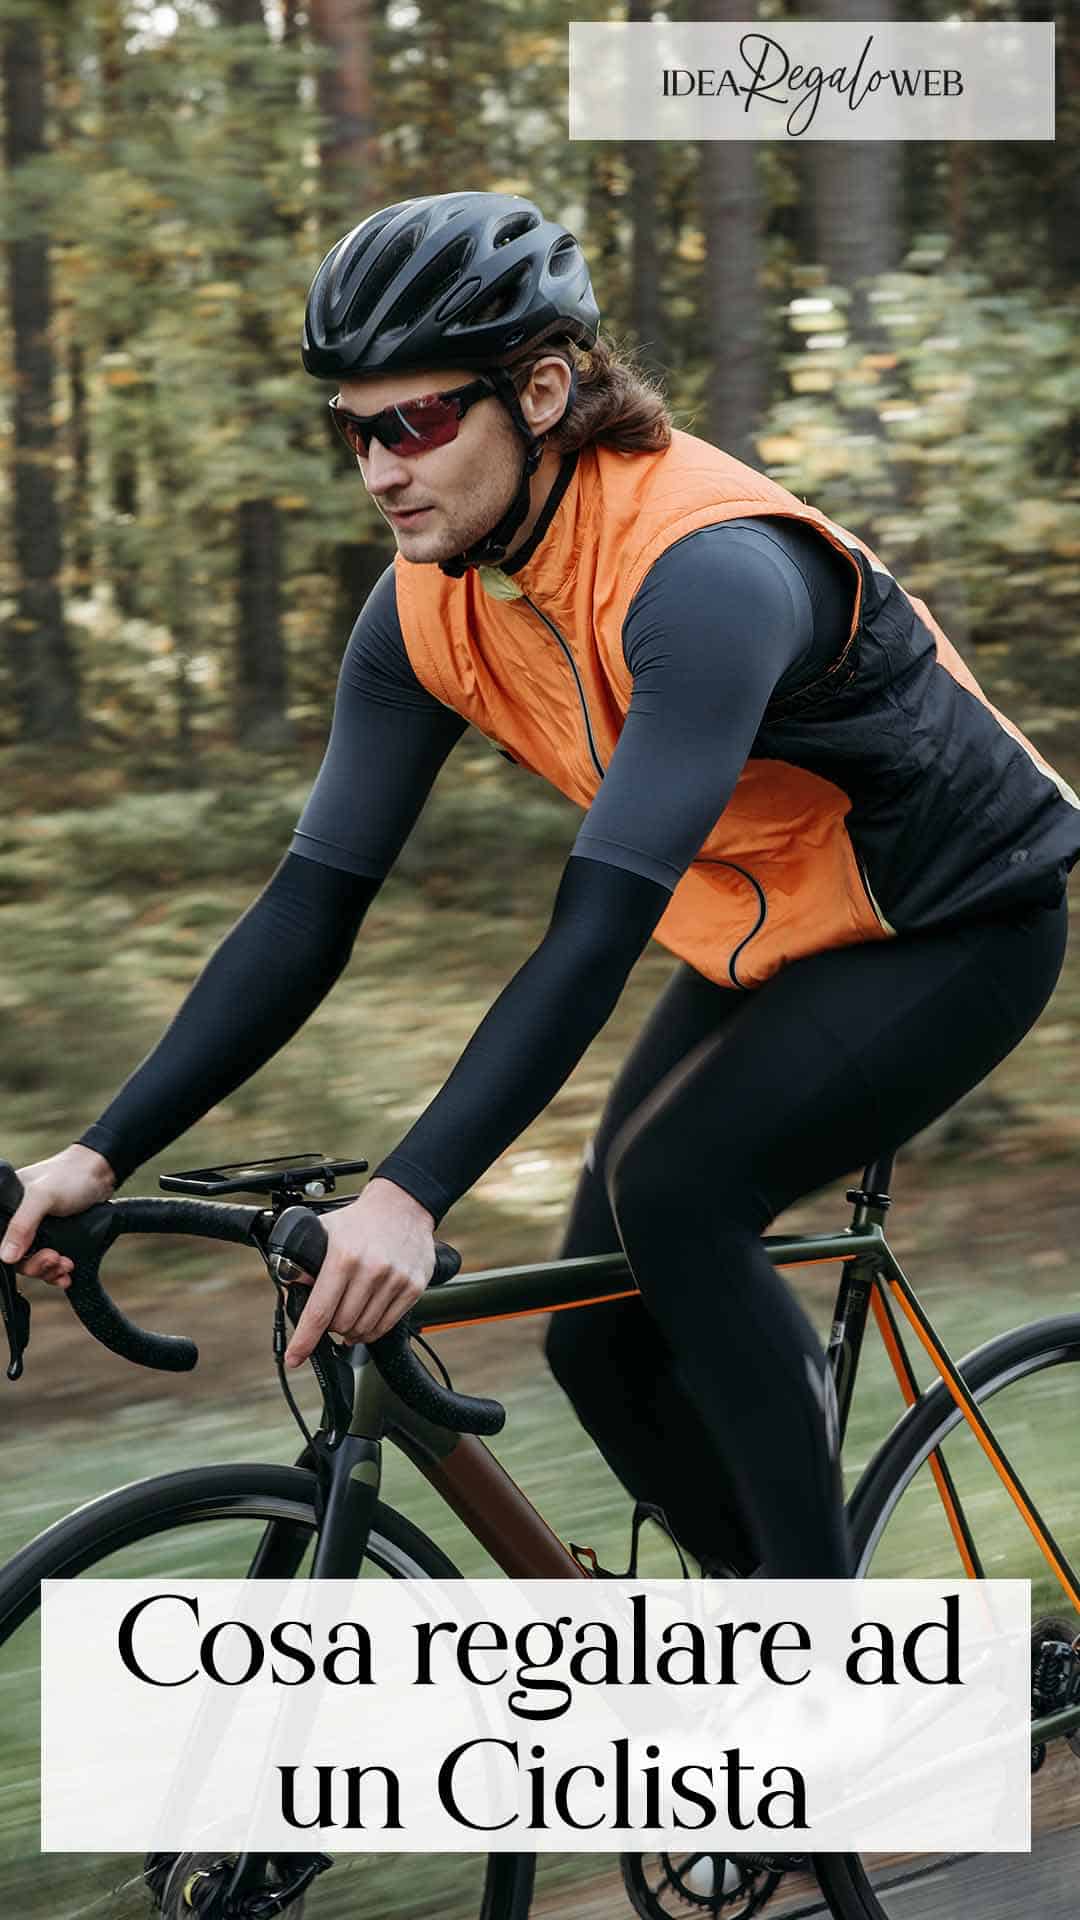 Design Bicicletta Hipster E Cicloamatori Stappa Birra con Confezione Regalo|Elegante Accessorio A Tema Bici Bicicletta Apribottiglie A Tema Bici Regalo di Compleanno per Ciclisti 